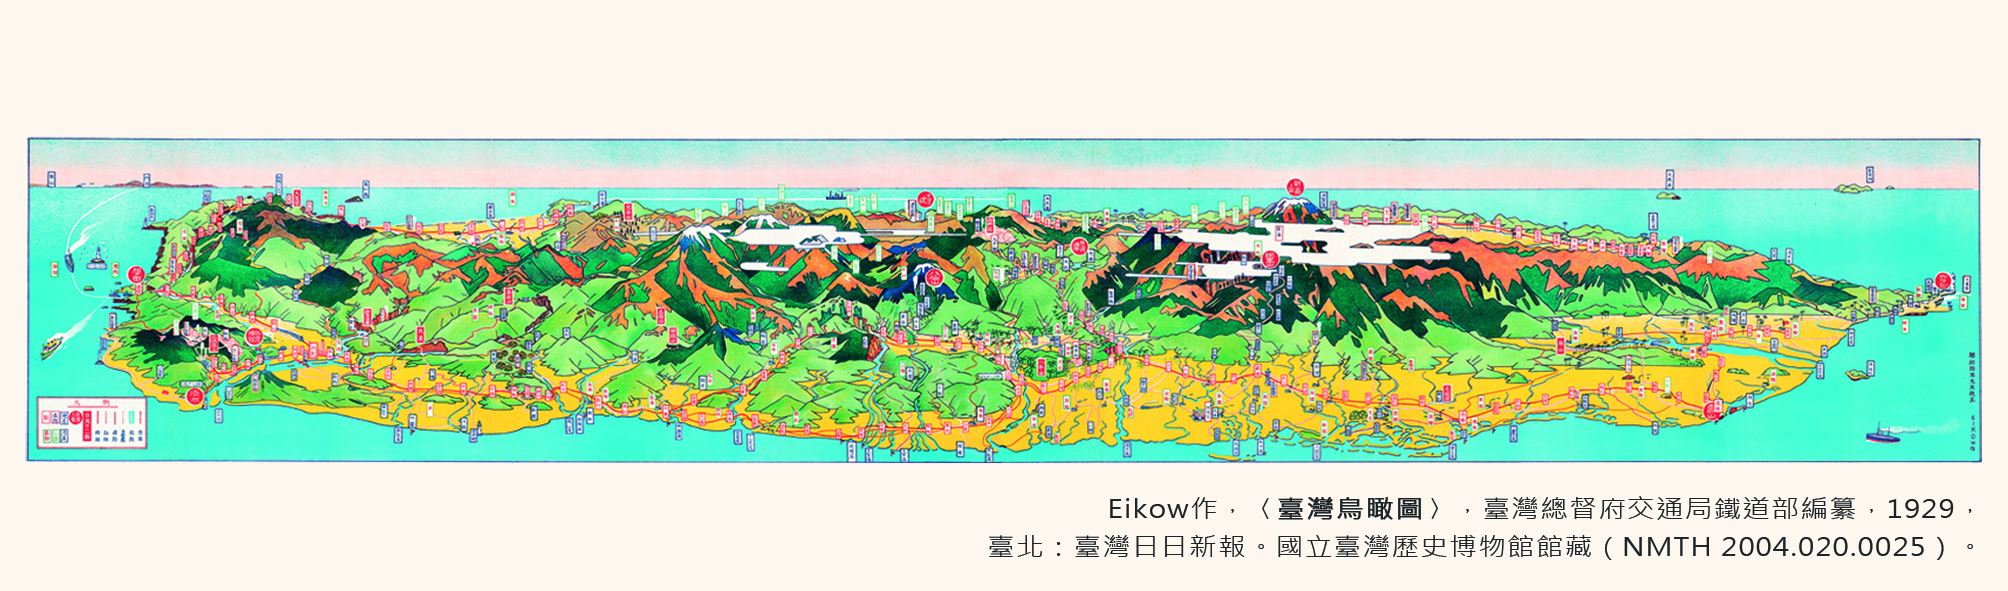 地圖書籤1(1929年-臺灣)